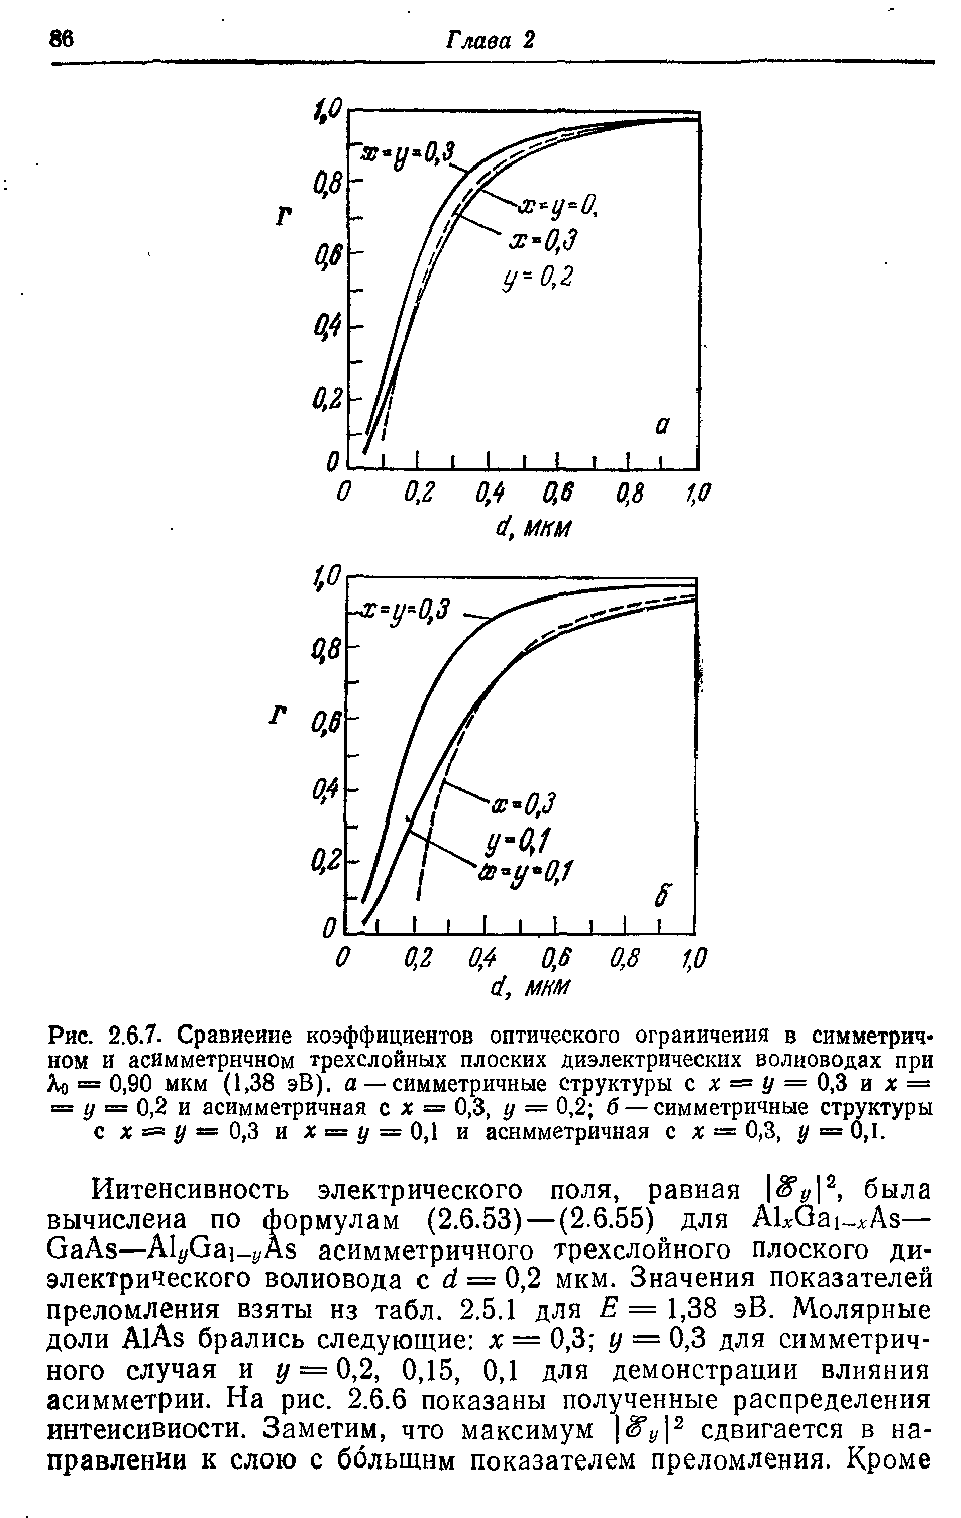 Рис. 2.6.7. Сравйейие коэффициентов оптического ограиичеиия в симметричном и асимметричном трехслойных плоских диэлектрических волноводах при Ло = 0,90 мкм (1,38 эВ). а — <a href="/info/268269">симметричные структуры</a> с х = у = 0,3 и х = = у = 0,2 и асимметричная с х = 0,3, у = 0,2 б — <a href="/info/268269">симметричные структуры</a> с X = у = 0,3 и х = у = 0,1 и асимметричная с х = 0,3, у = 0,1.
